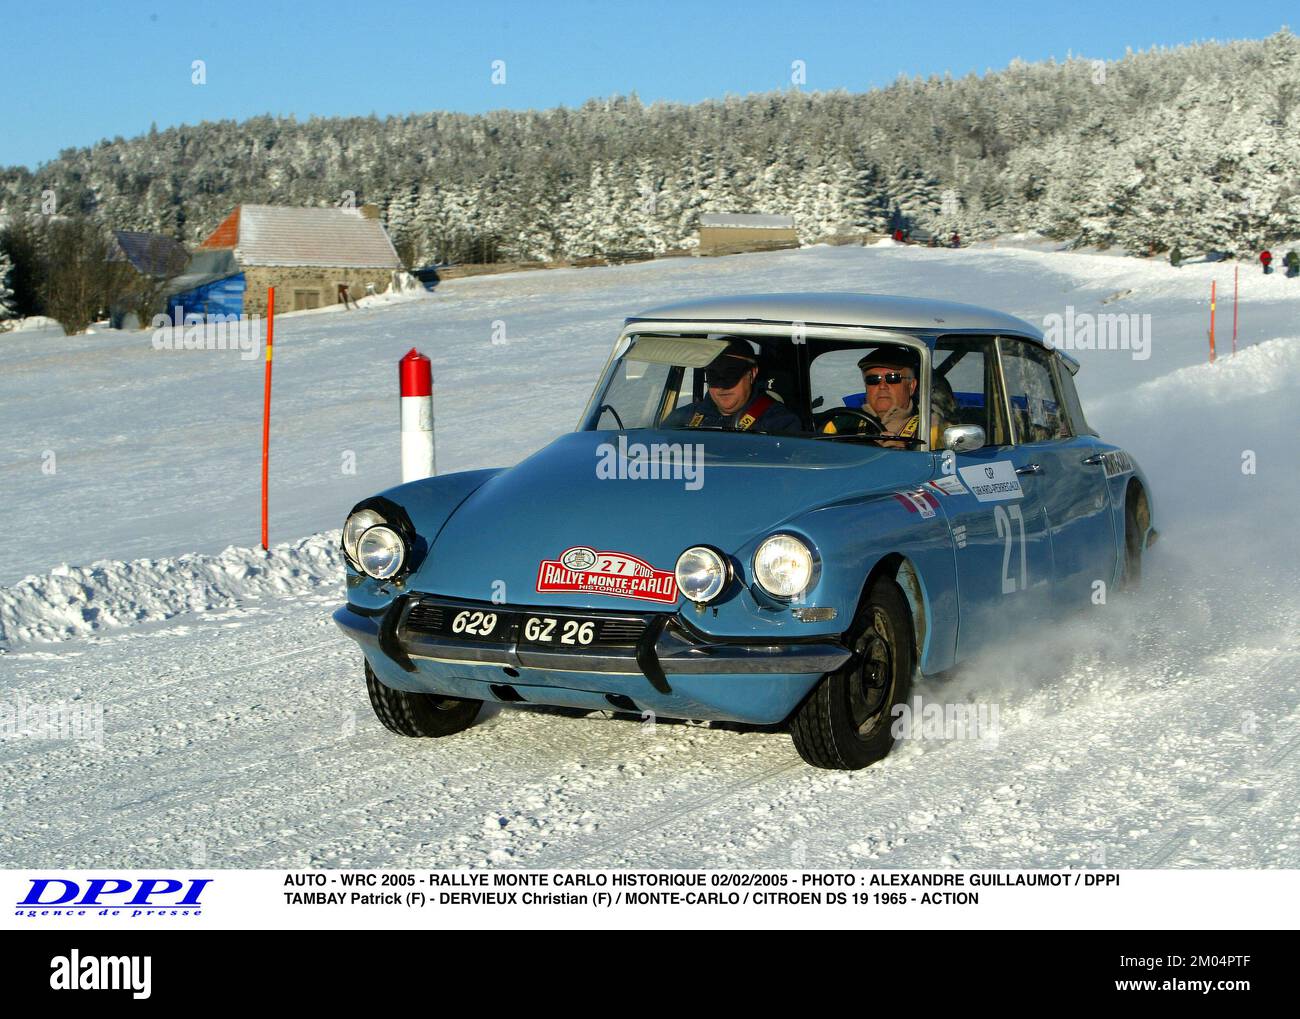 AUTO - WRC 2005 - RALLYE MONTE CARLO HISTORIQUE 02/02/2005 - PHOTO : ALEXANDRE GUILLAUMOT / DPPI TAMBAY PATRICK (F) - DERVIEUX CHRISTIAN (F) / MONTE-CARLO / CITROEN DS 19 1965 - ACTION Banque D'Images